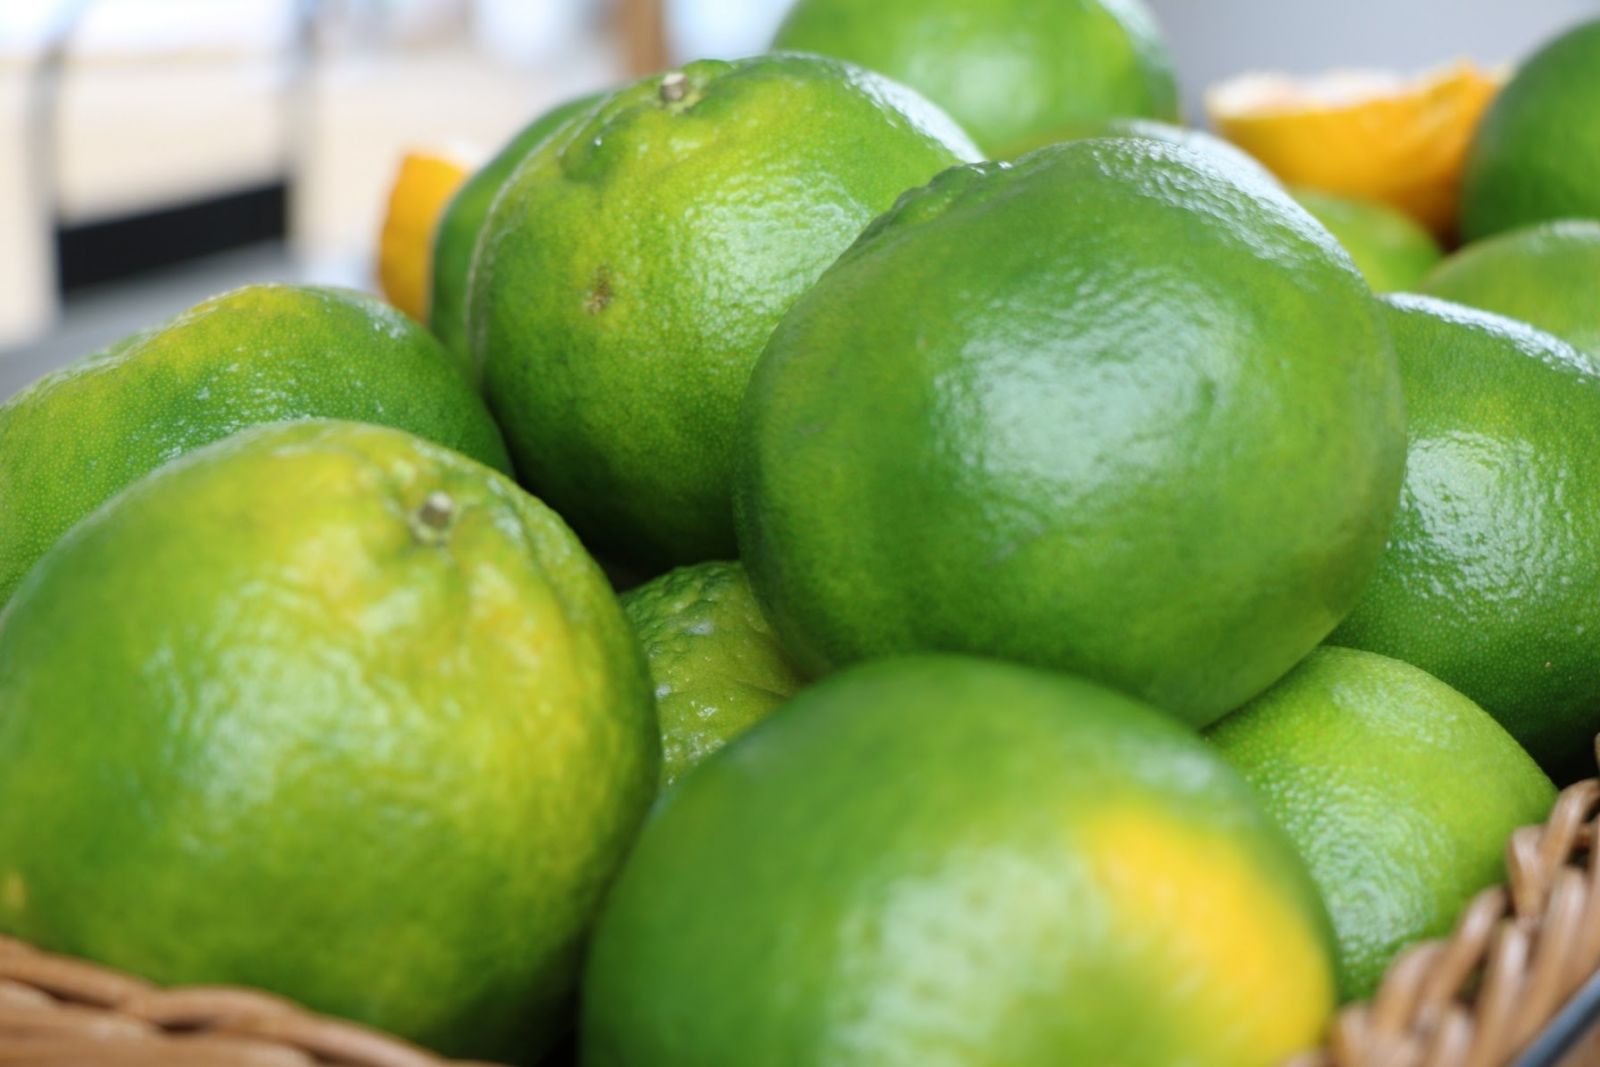 圖一 青皮椪柑是柑橘中較早盛產的品種之一